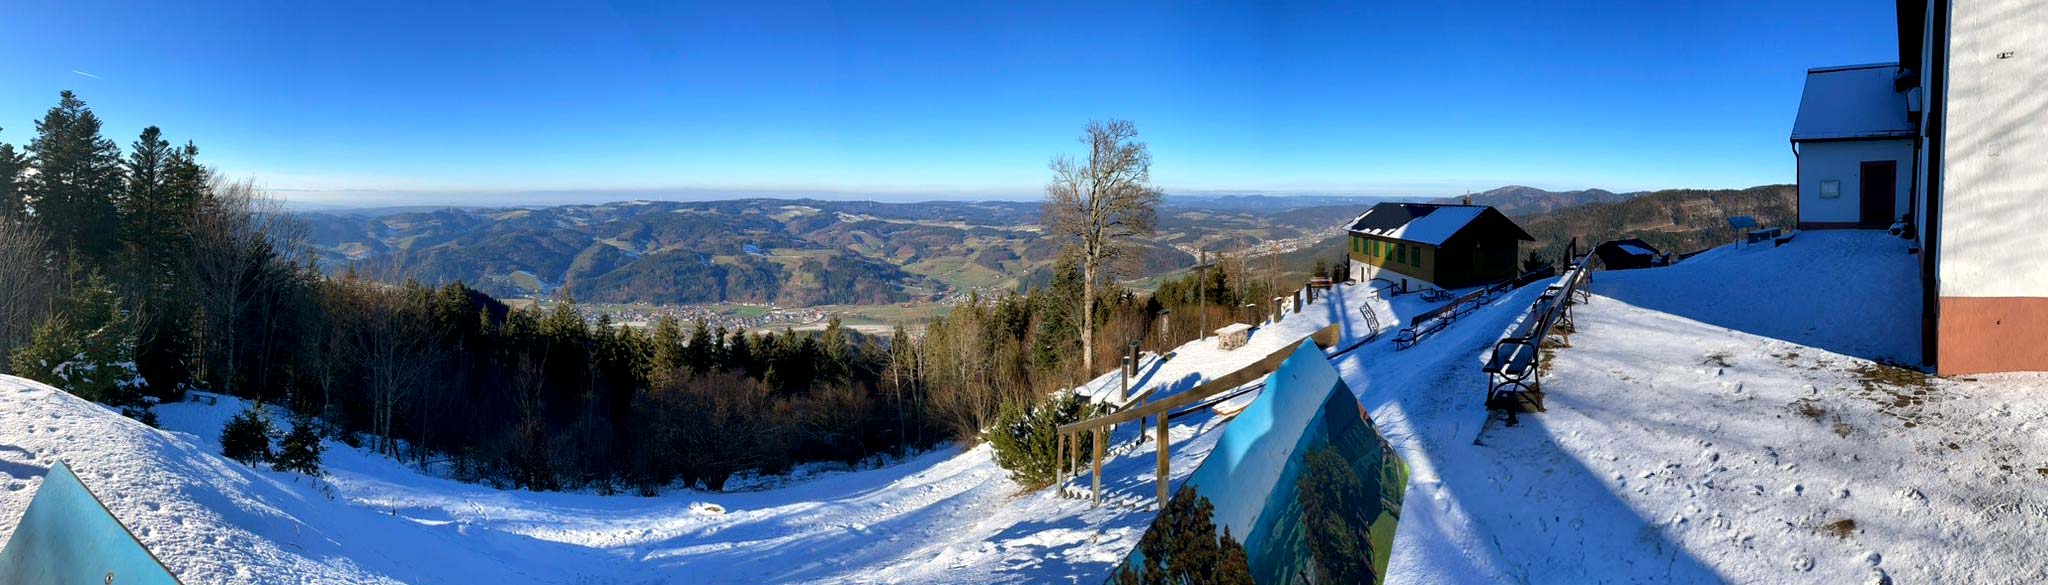 Ausblick vom schneebedeckten Hörnleberg hinab ins Elztal bei blauem Himmel